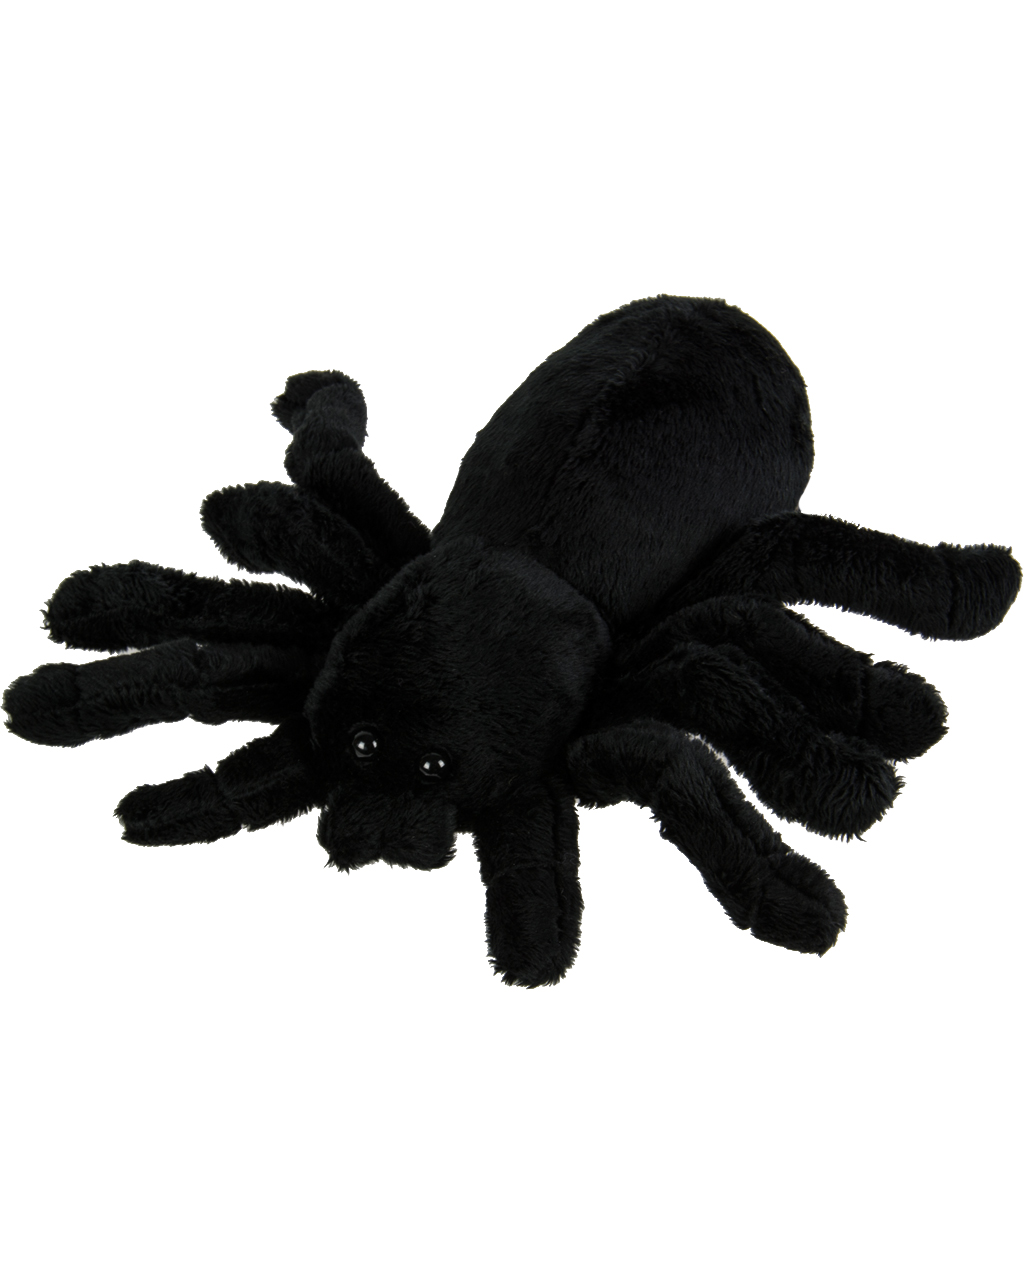 Uni-Toys schwarze Spinne Vogelspinne 14 cm lang 